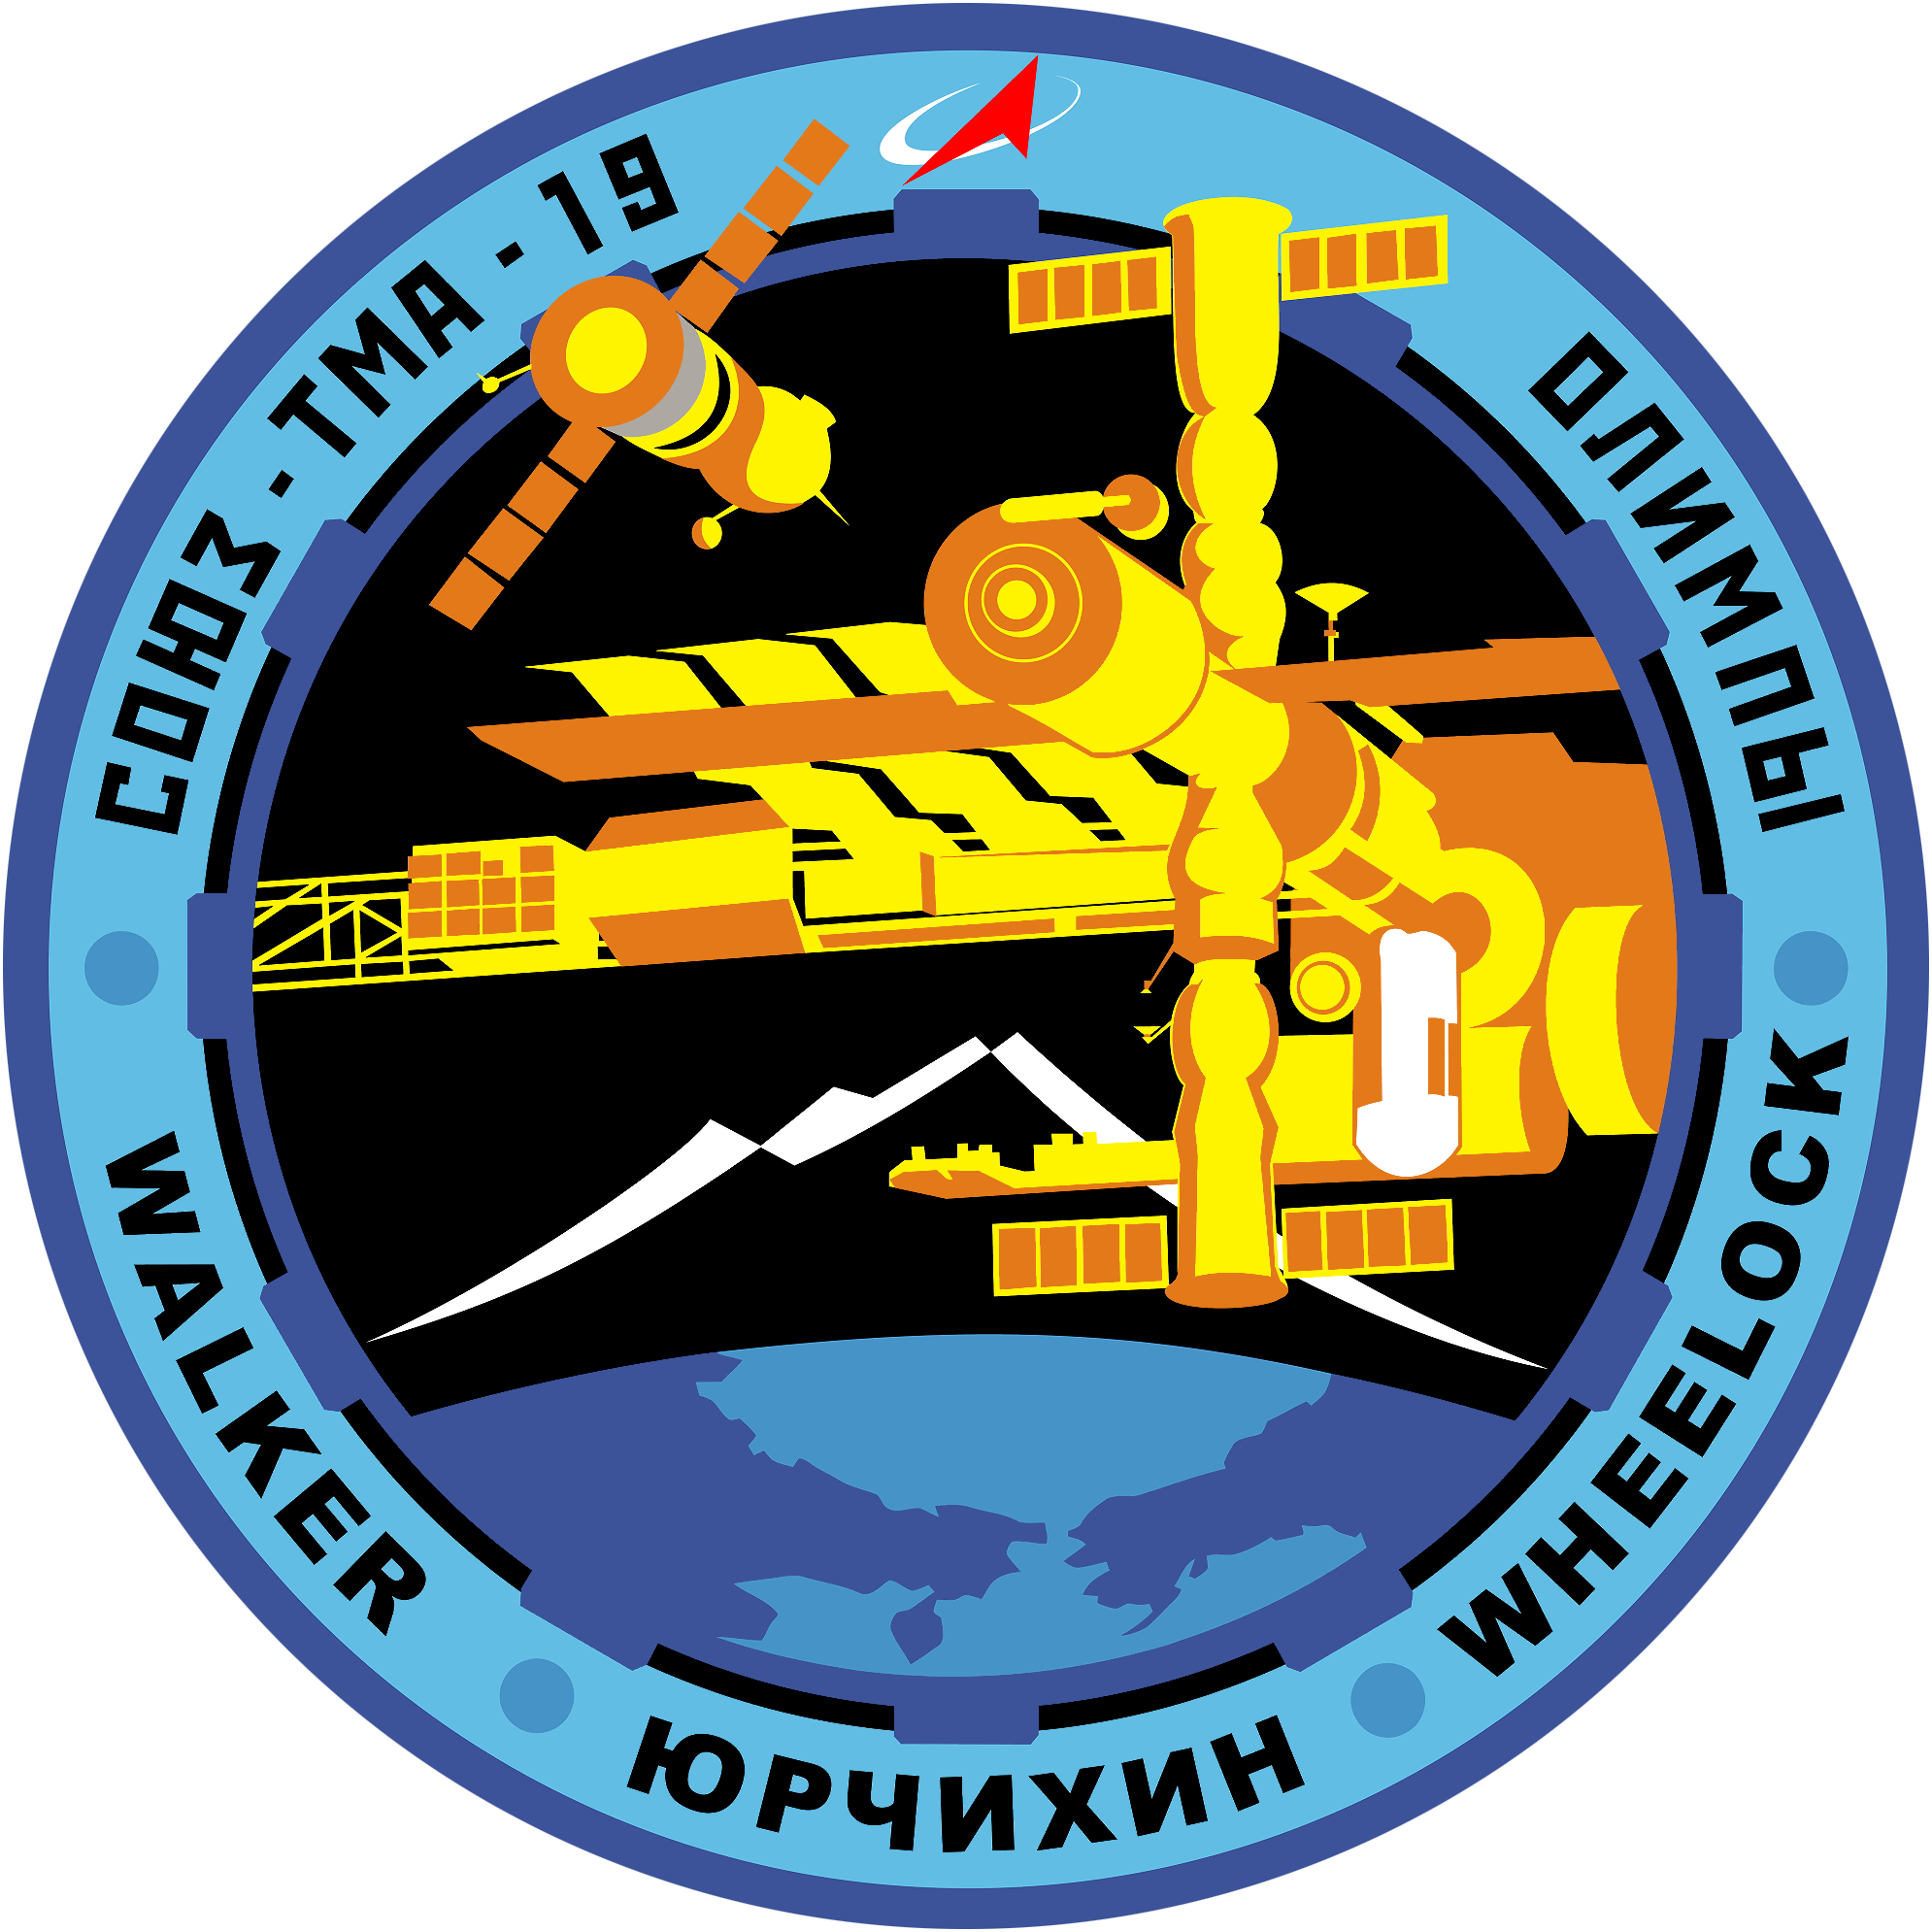 Soyuz TMA-19